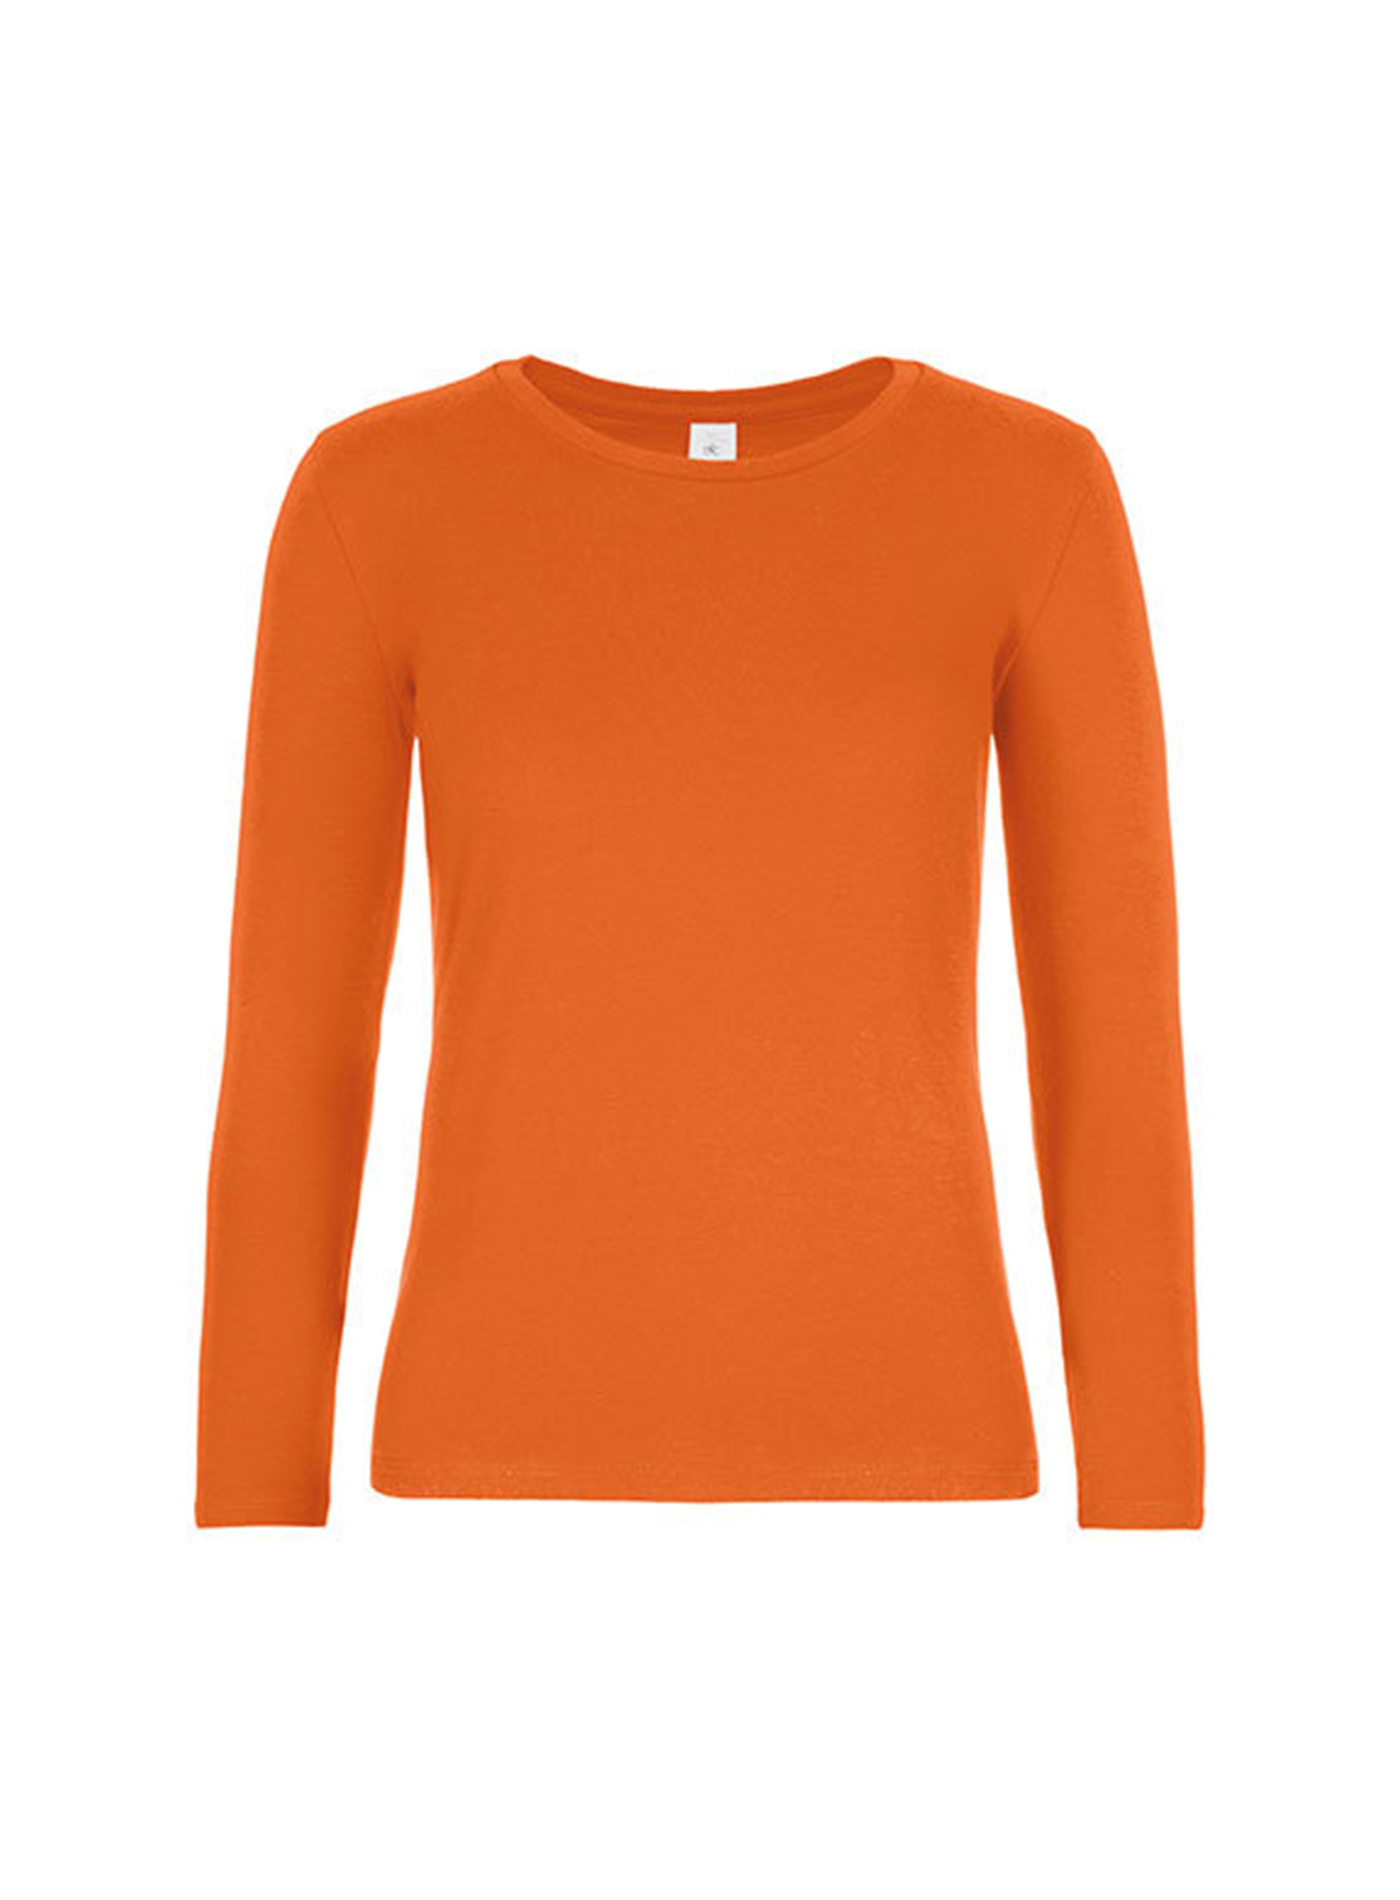 Dámské tričko s dlouhým rukávem B&C Collection - Oranžová S